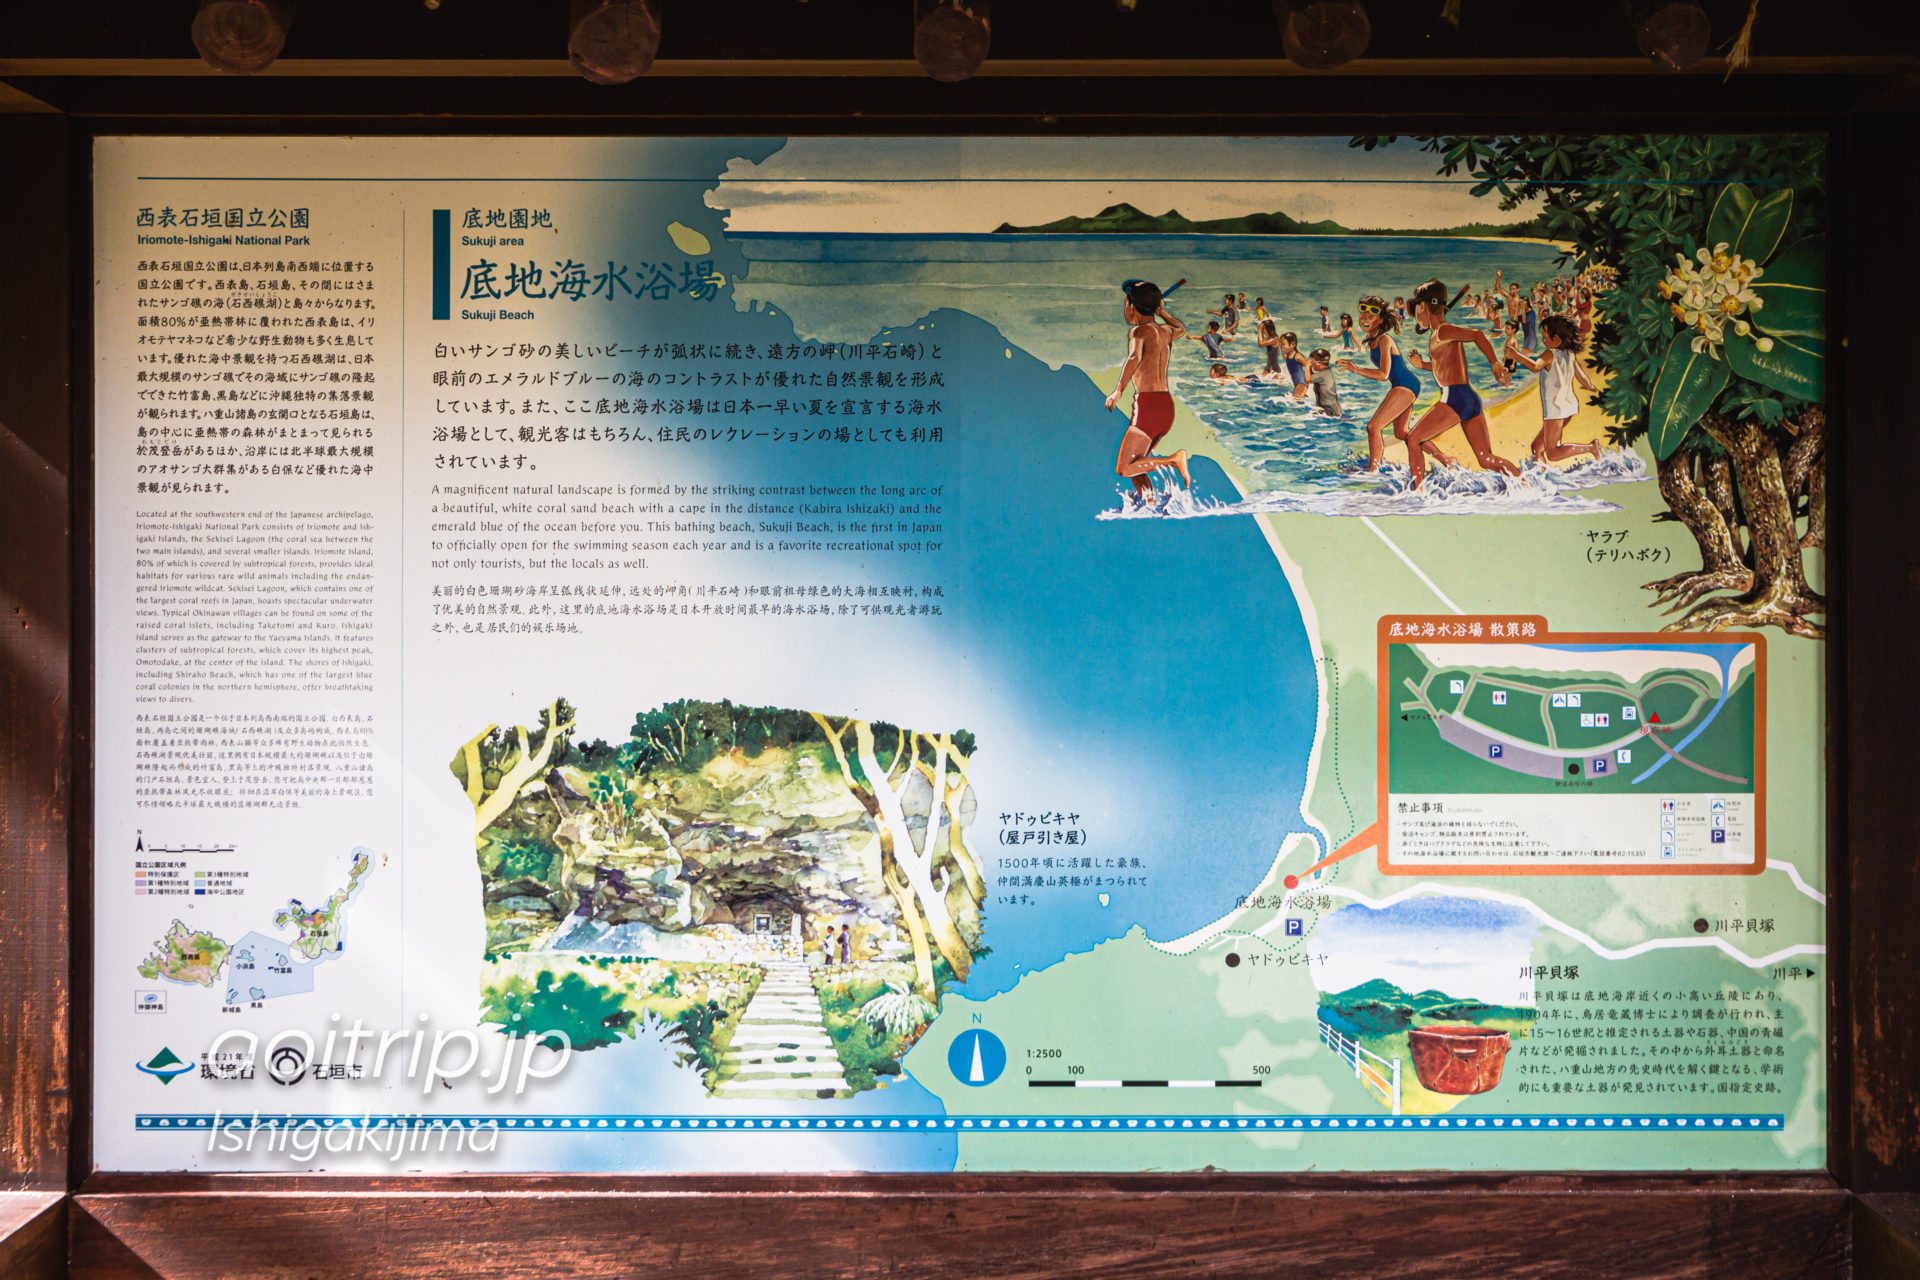 石垣島 底地ビーチの解説